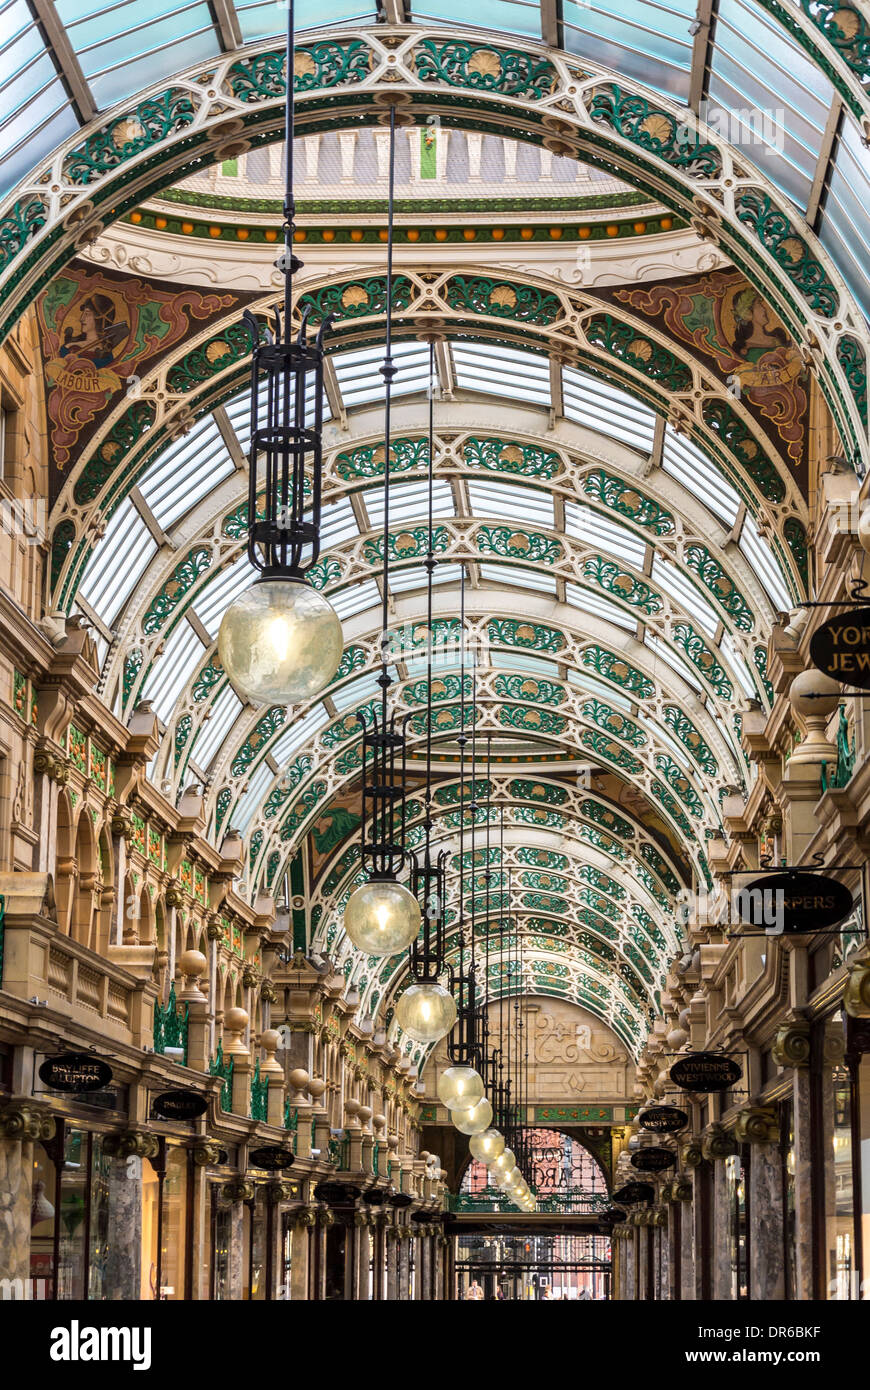 Techos con arcos segmentados de hierro fundido ornamentados vistos desde el interior de County Arcade, Victoria Quarter, Leeds. Foto de stock